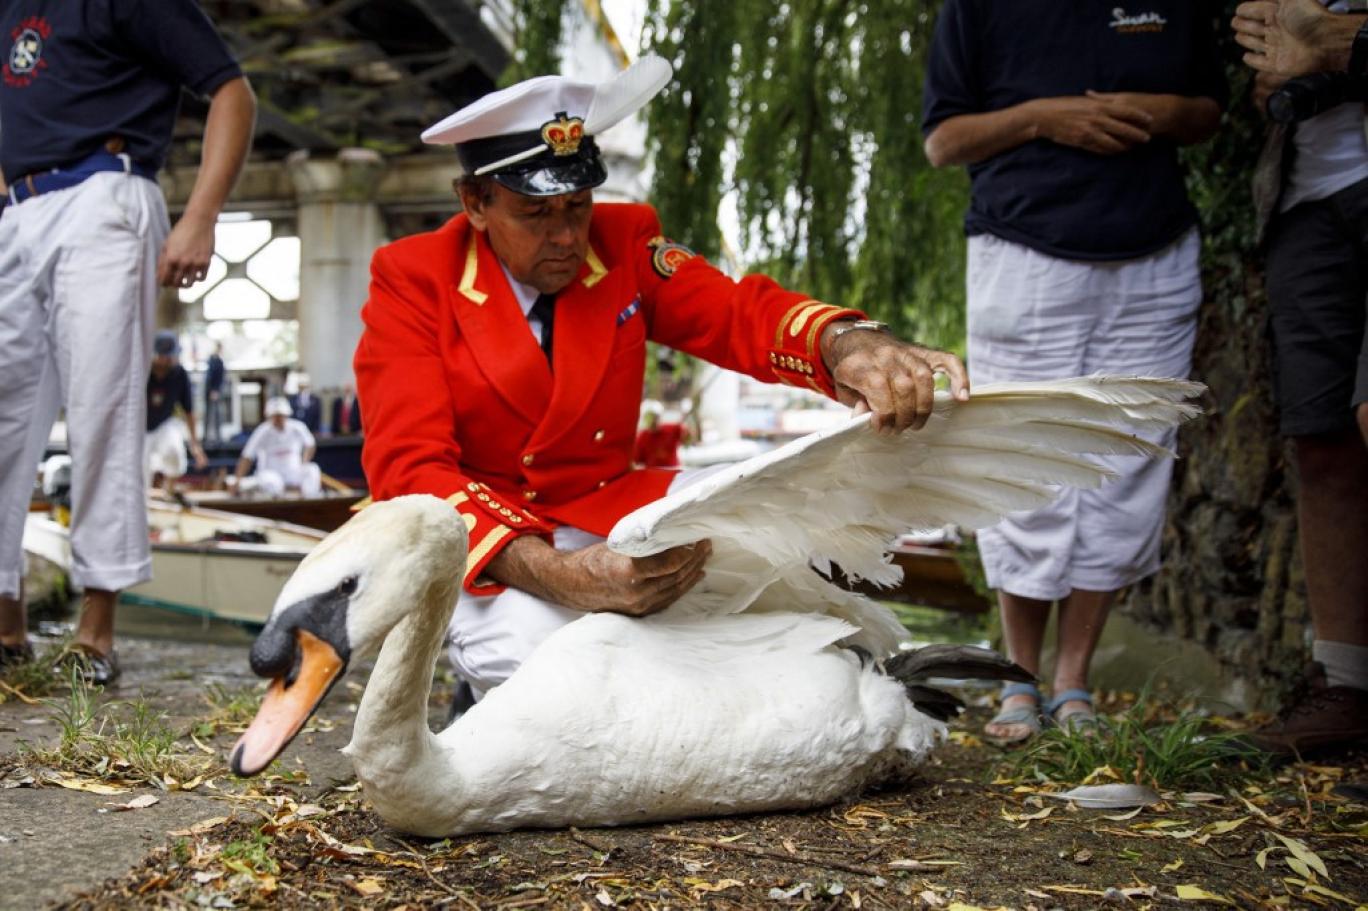 День человека птицы. Swan upping в Великобритании. Swan upping традиции. Хранитель лебедей королевы Дэвид барбер. Праздник Swan upping и Королева.